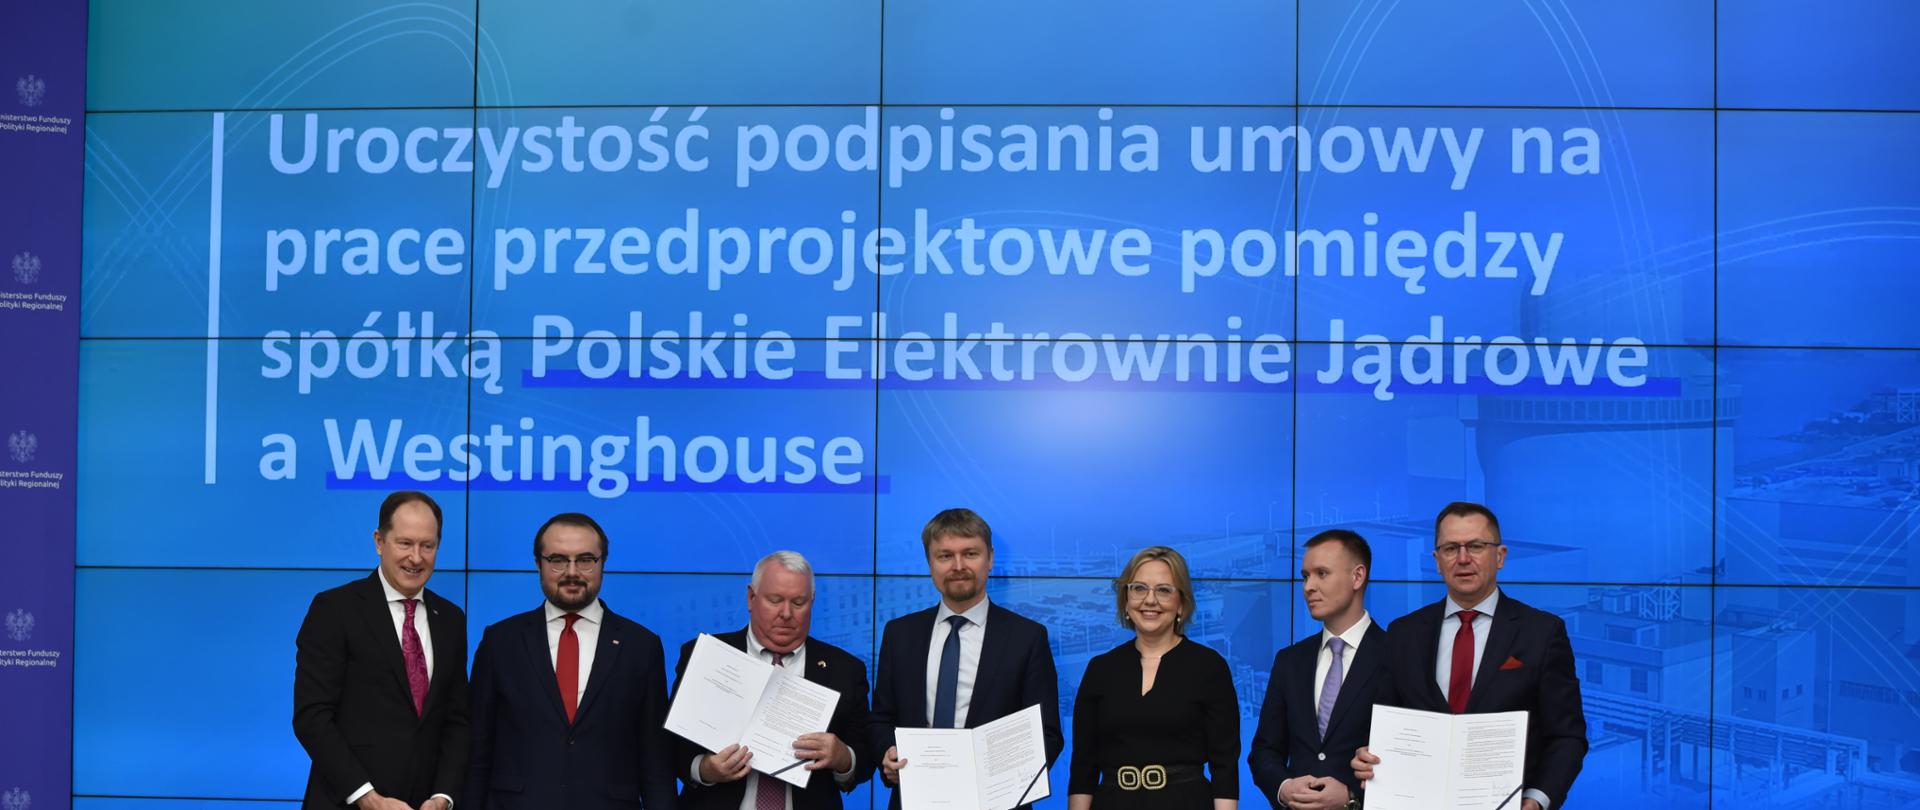 Podpisanie umowy rozpoczynającej wspólne działania prowadzące do przygotowania projektu pierwszej elektrowni jądrowej w Polsce
